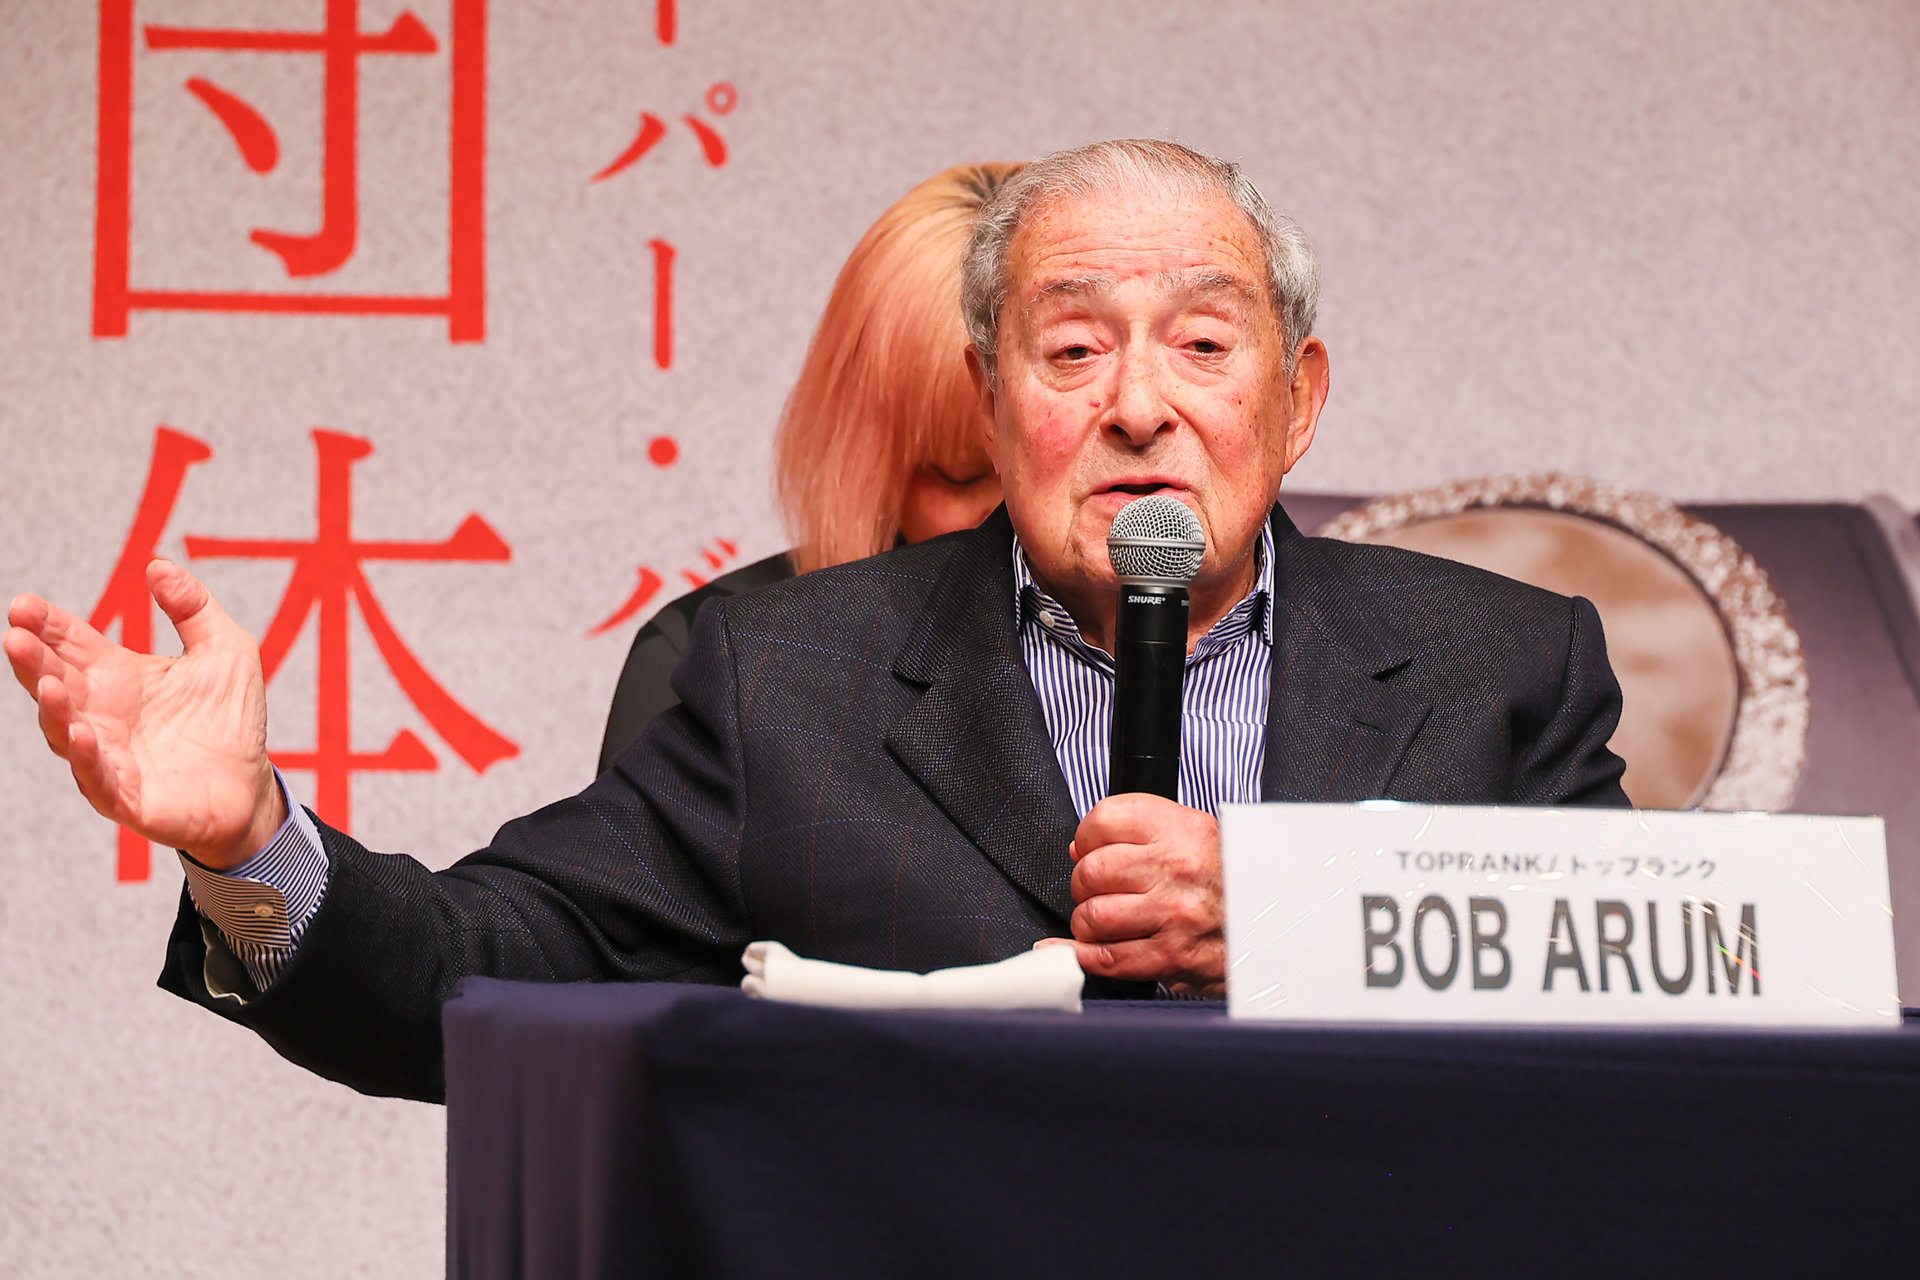 井上尚弥VS.タパレス戦に期待　米トップランク社ボブ・アラムCEO「日本市場は素晴らしい」